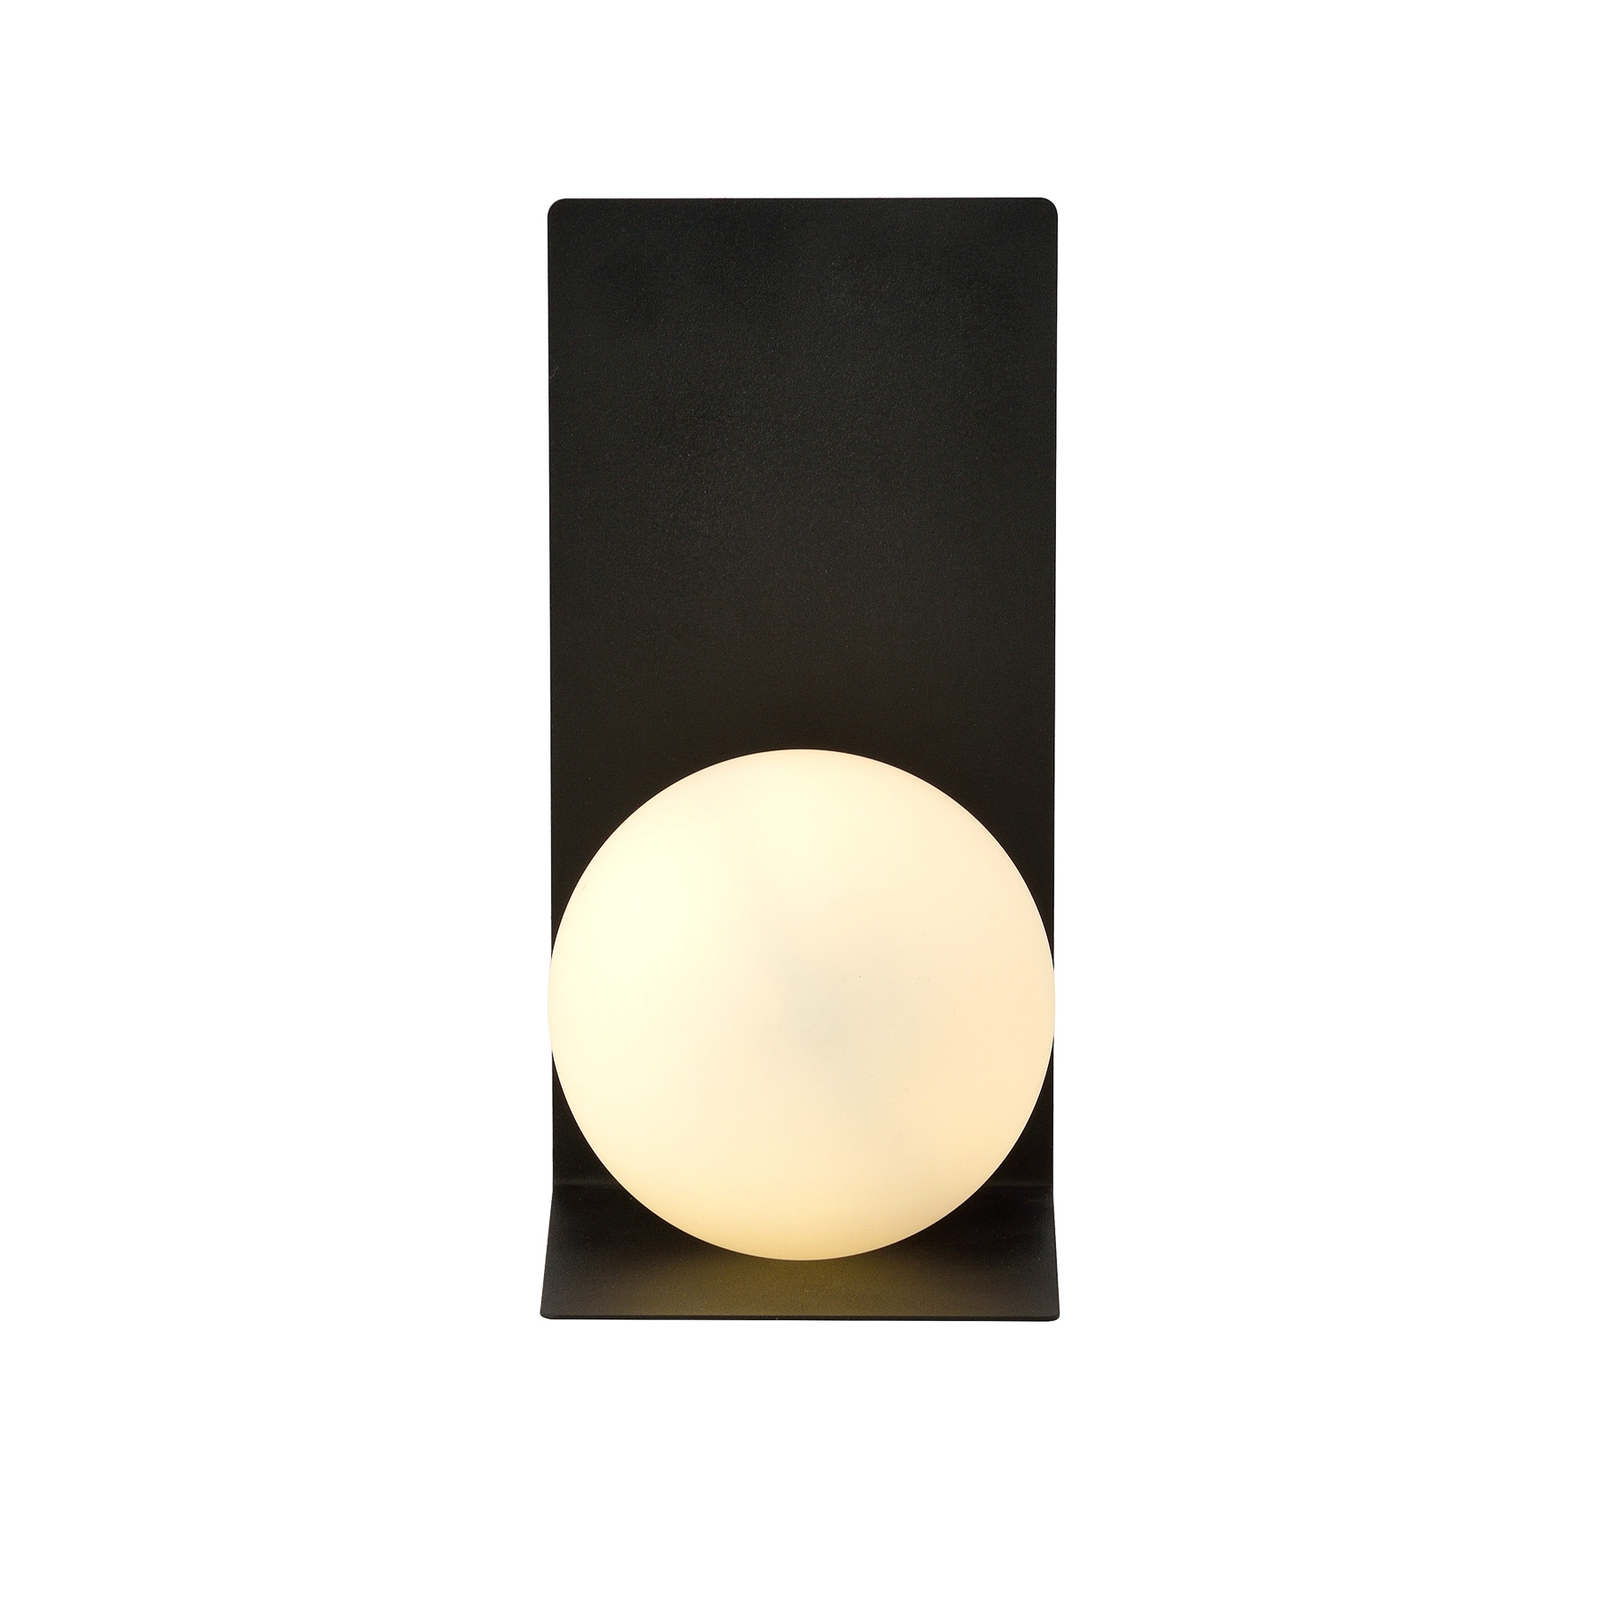 Wandlamp vorm 5, 15 cm x 30 cm, zwart/opaal